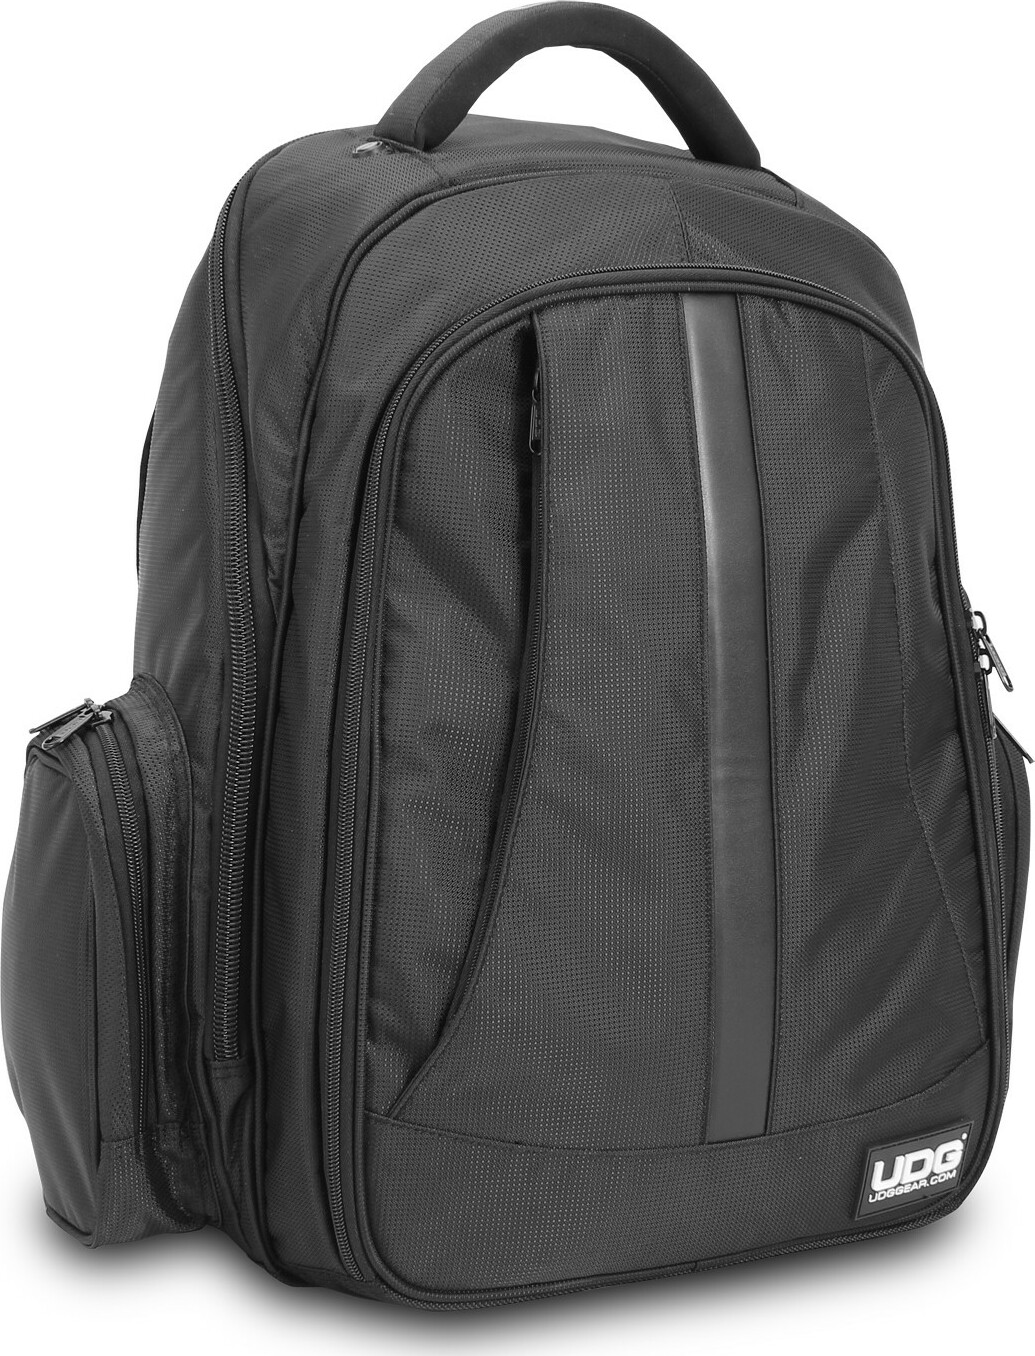 Udg Ultimate Backpack Black/orange - Sac Transport Trolley Dj - Main picture